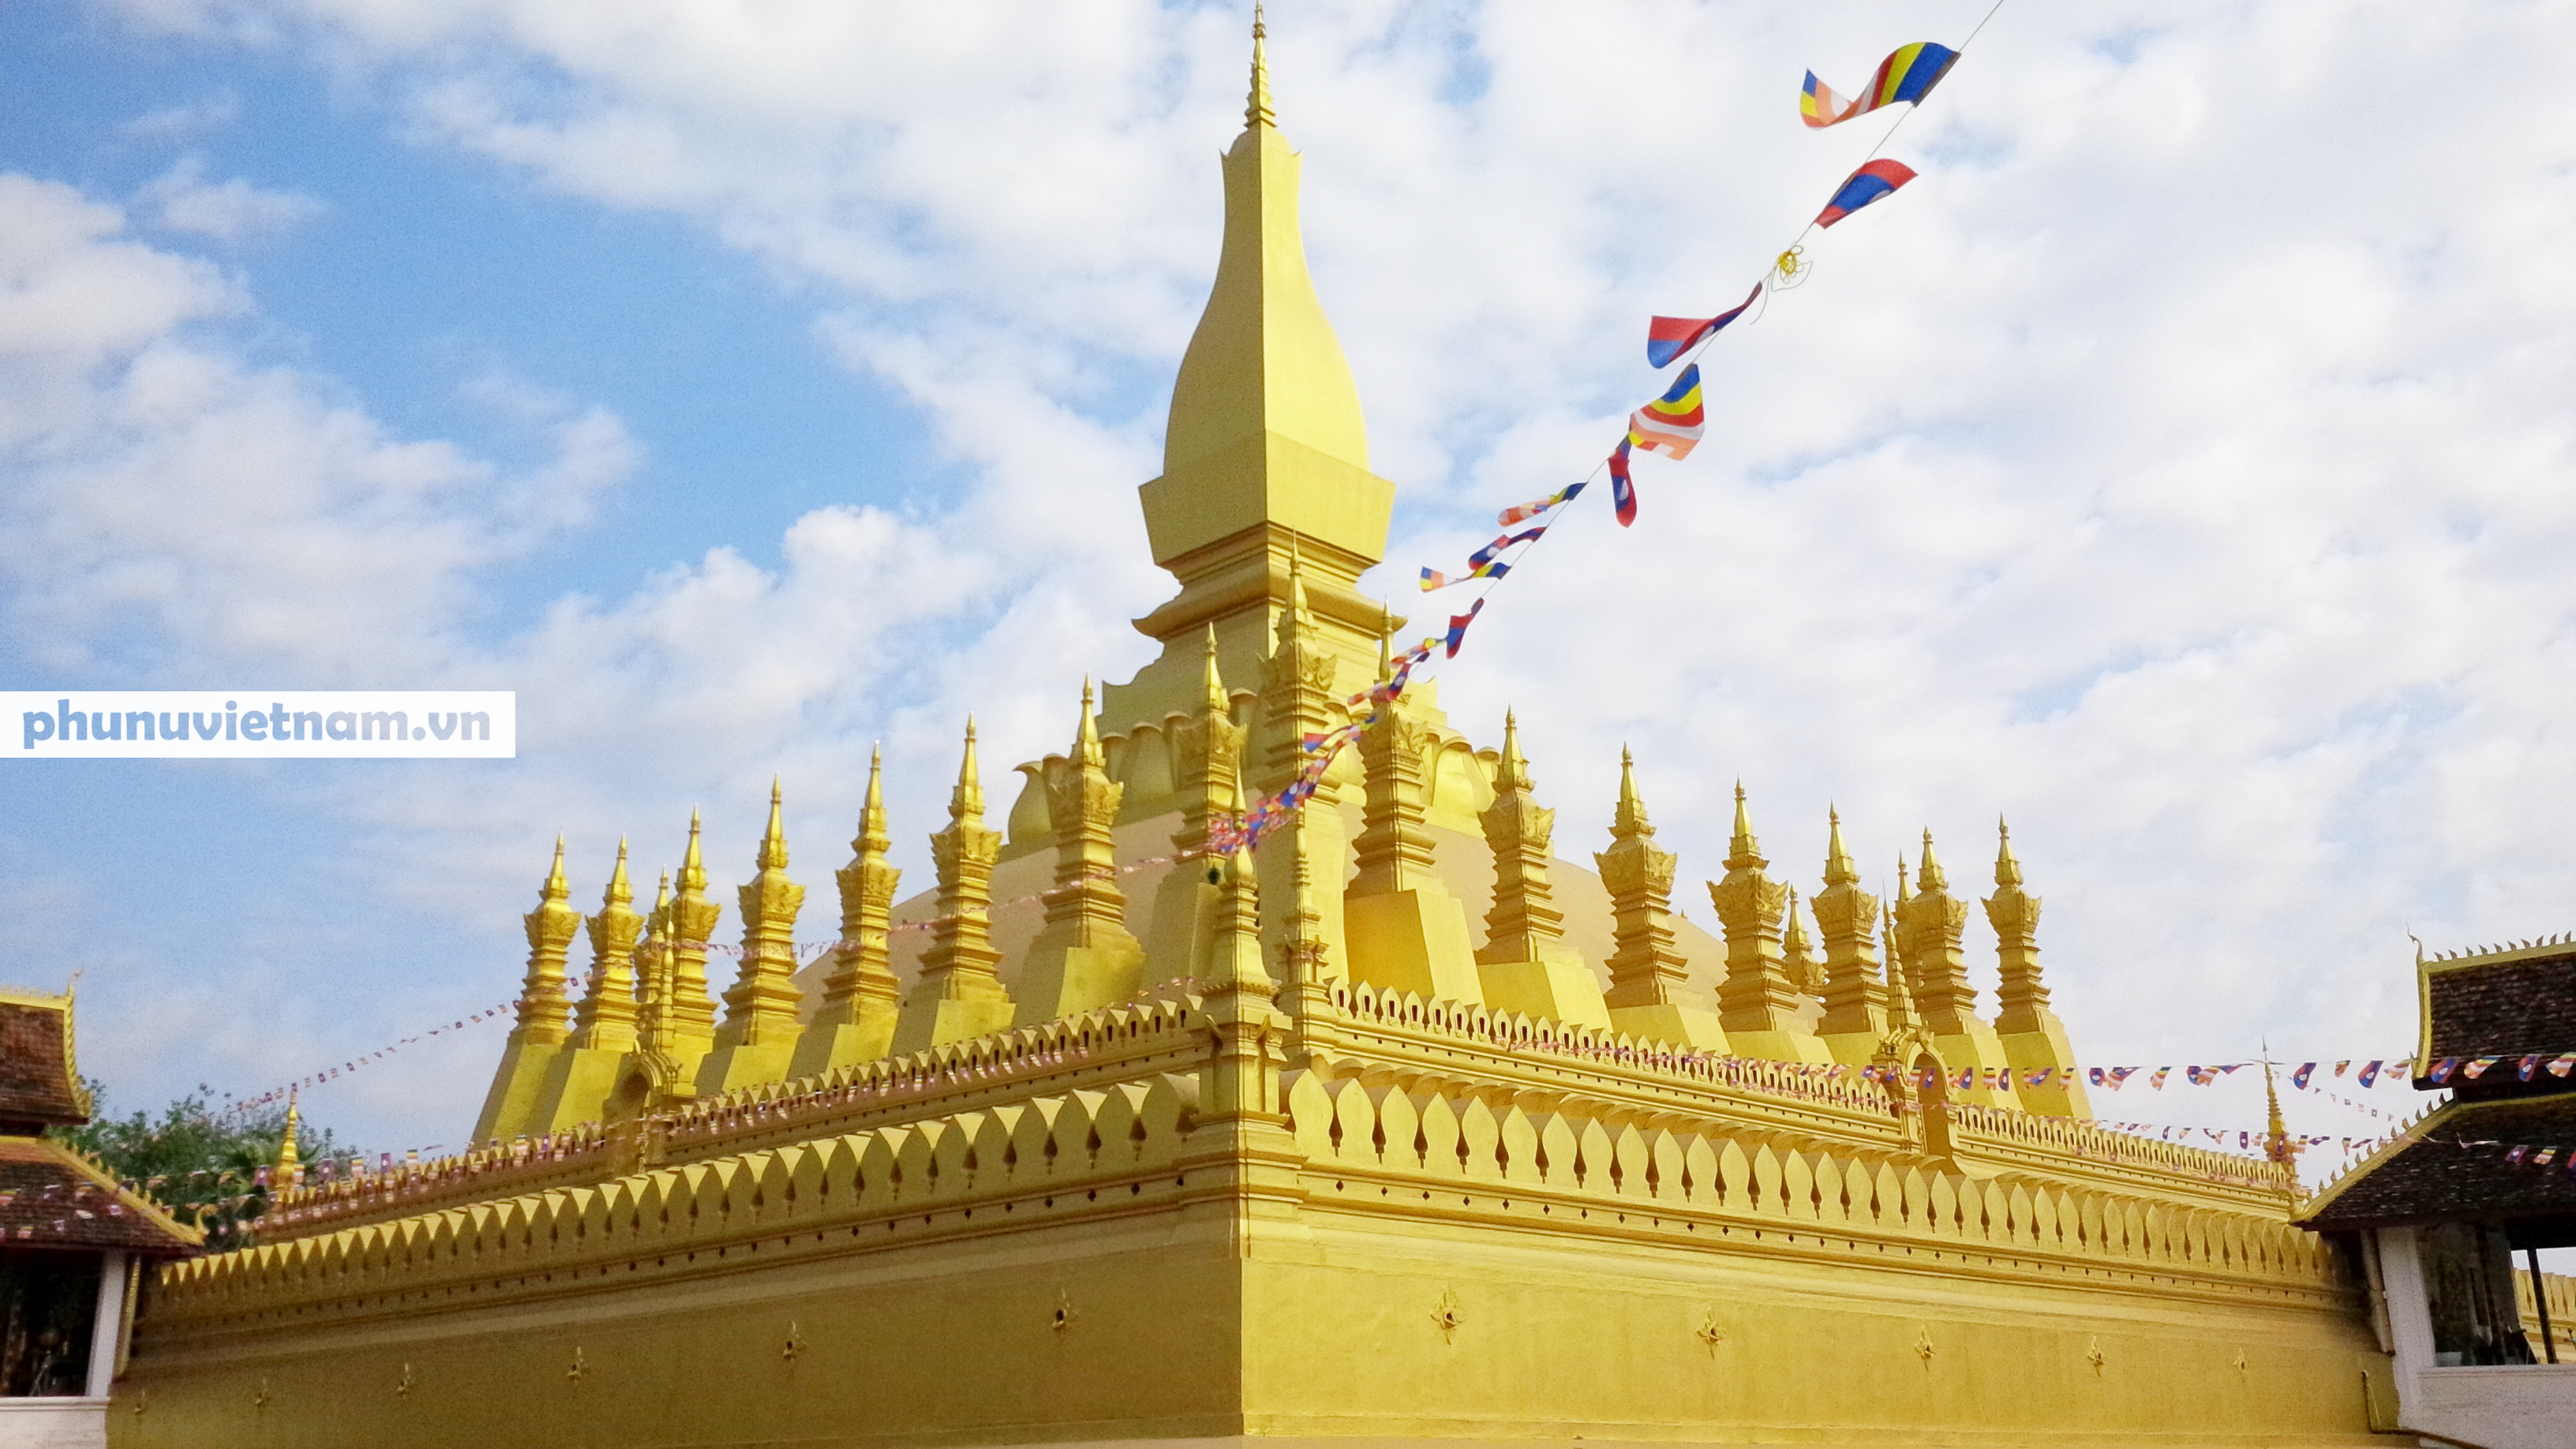 Chiêm ngưỡng ngôi tháp vàng lớn nhất của Lào, gần 500 tuổi tráng lệ giữa đất trời - Ảnh 8.